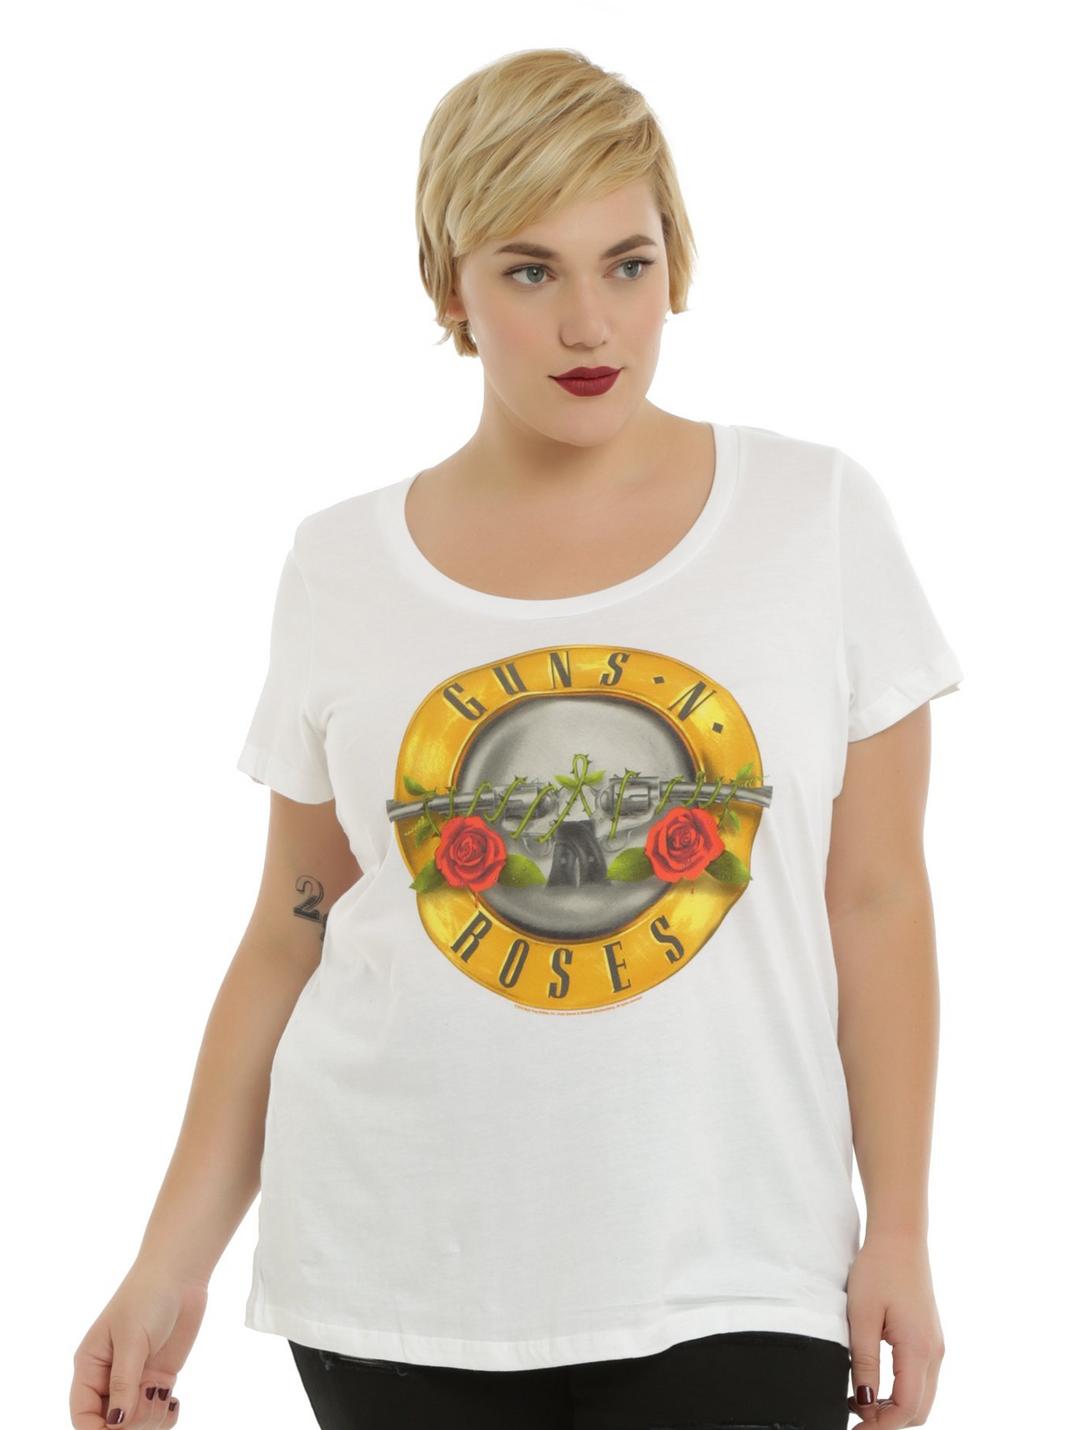 Guns N' Roses Logo Girls T-Shirt Plus Size, BLACK, hi-res